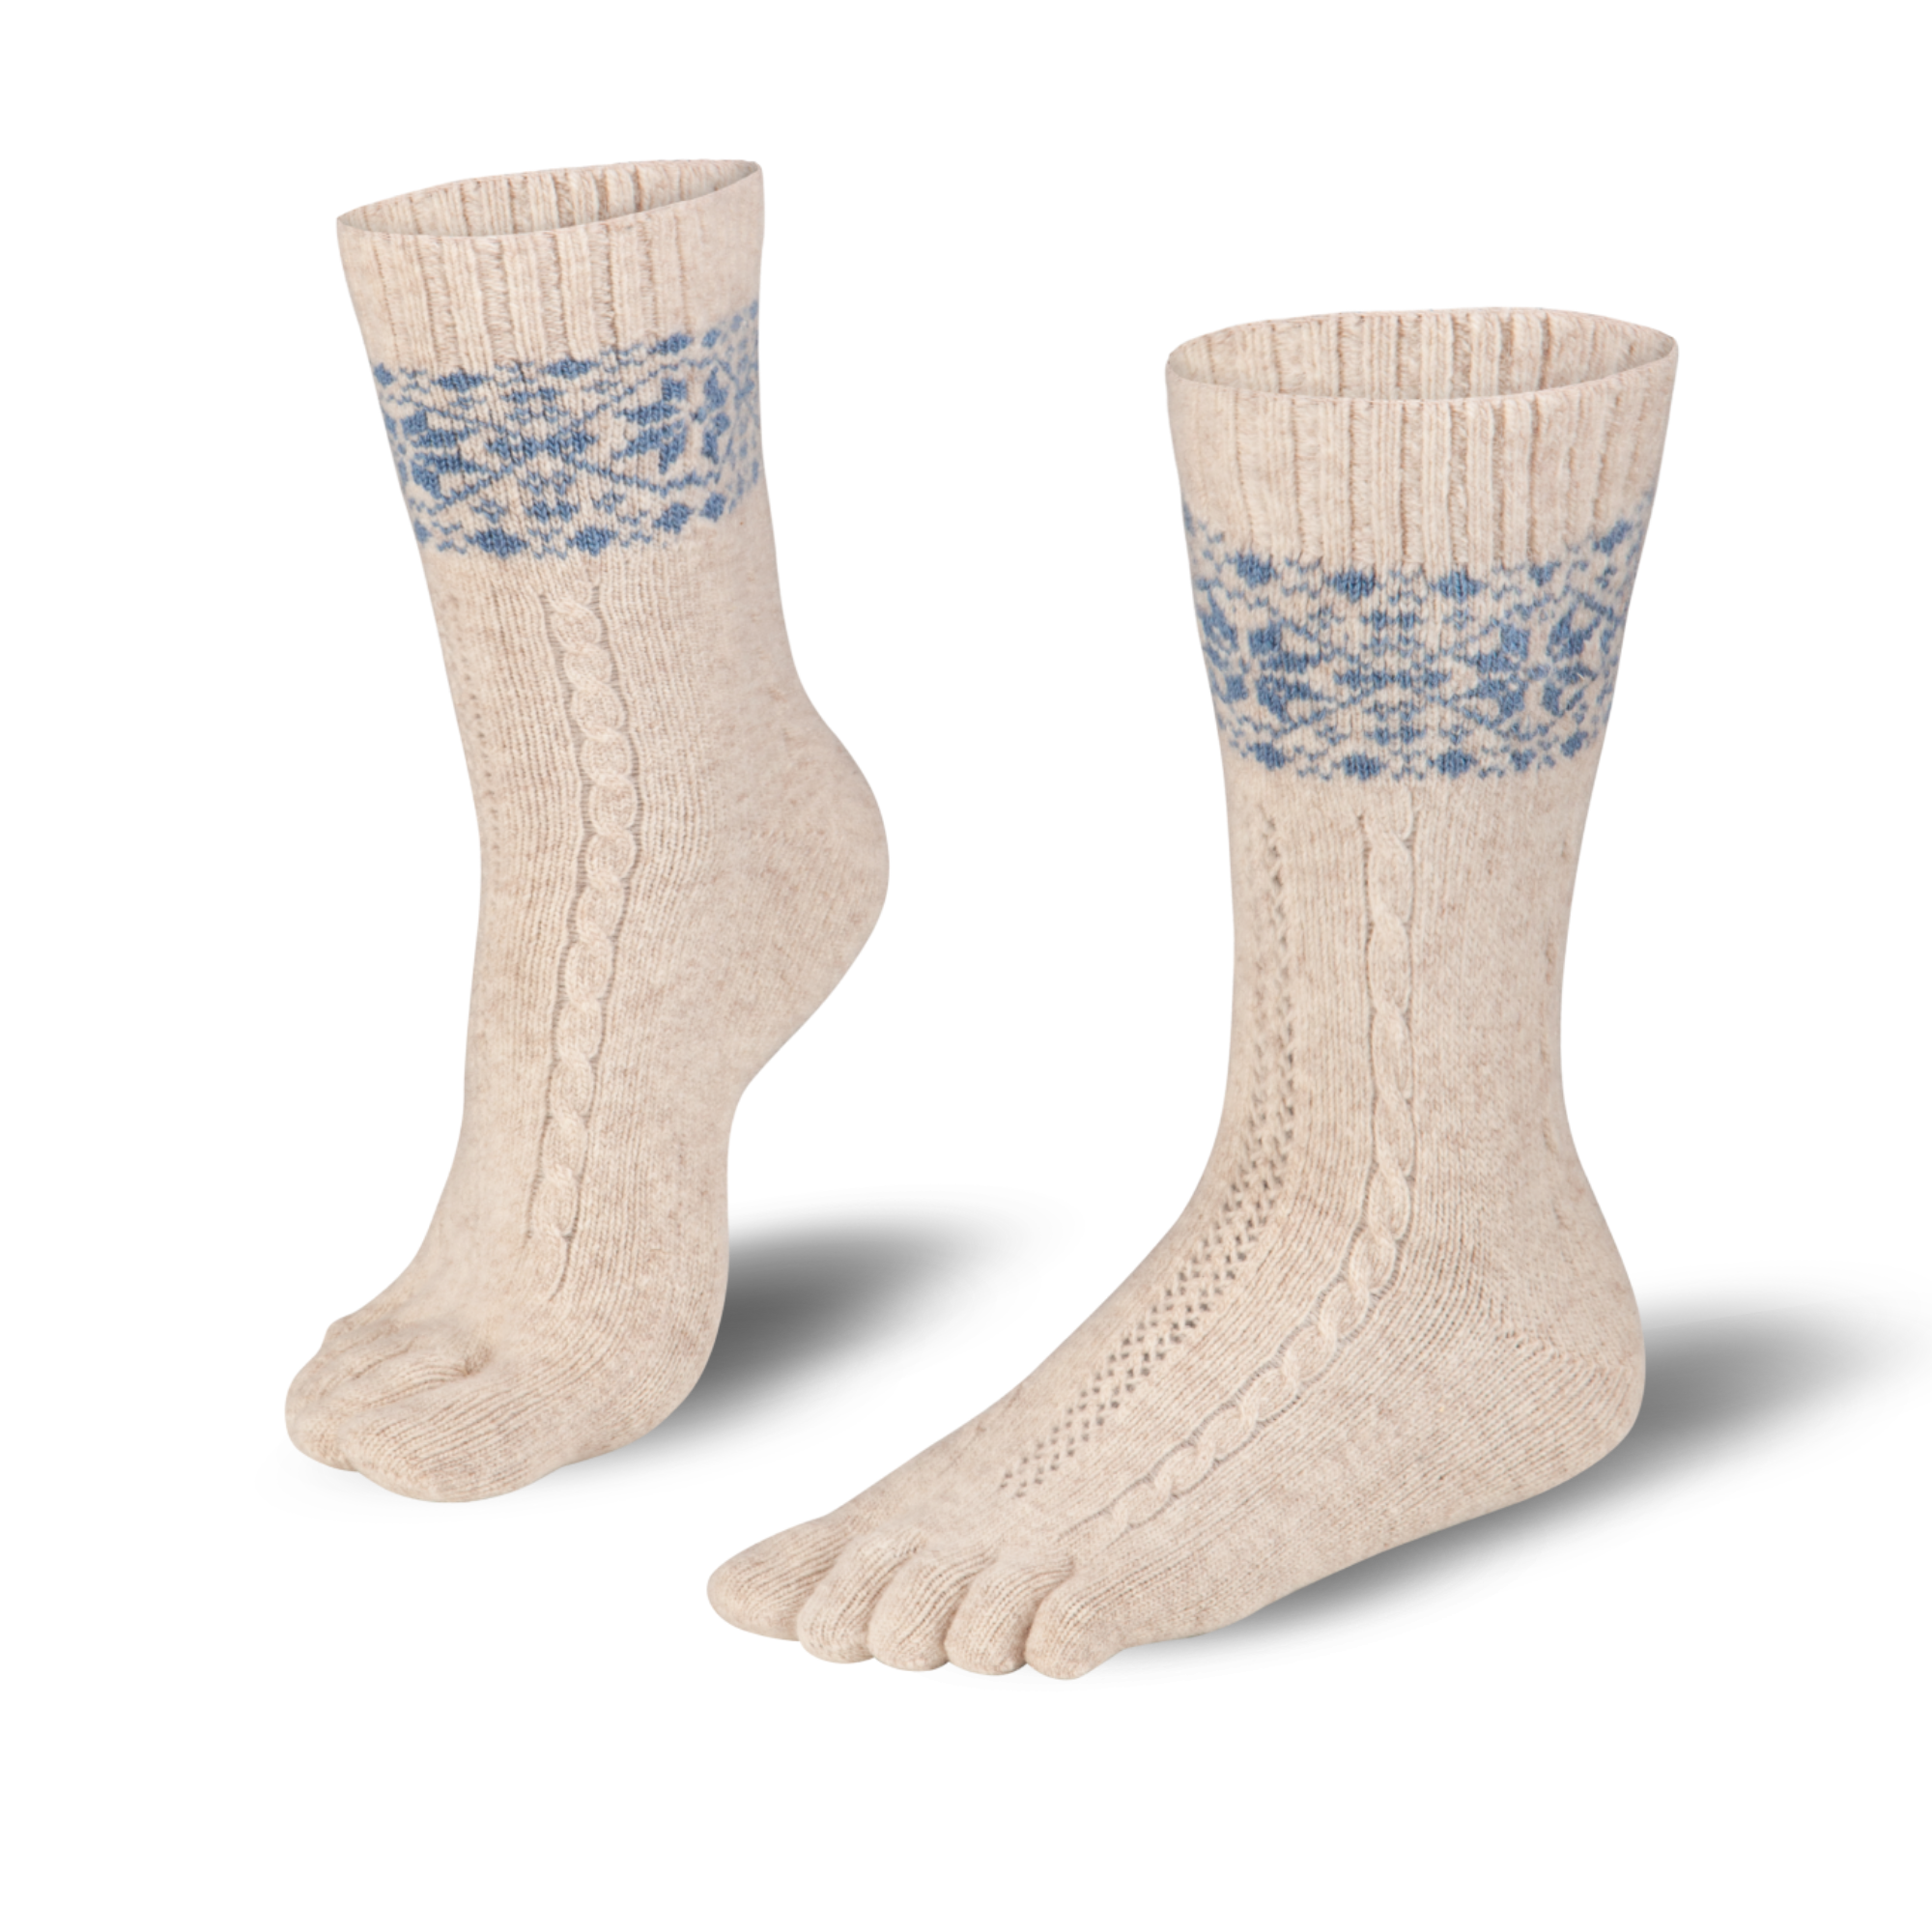  Knitido caldo calze con dita merino e cashmere con motivo a chiazze di neve in beige/azzurro